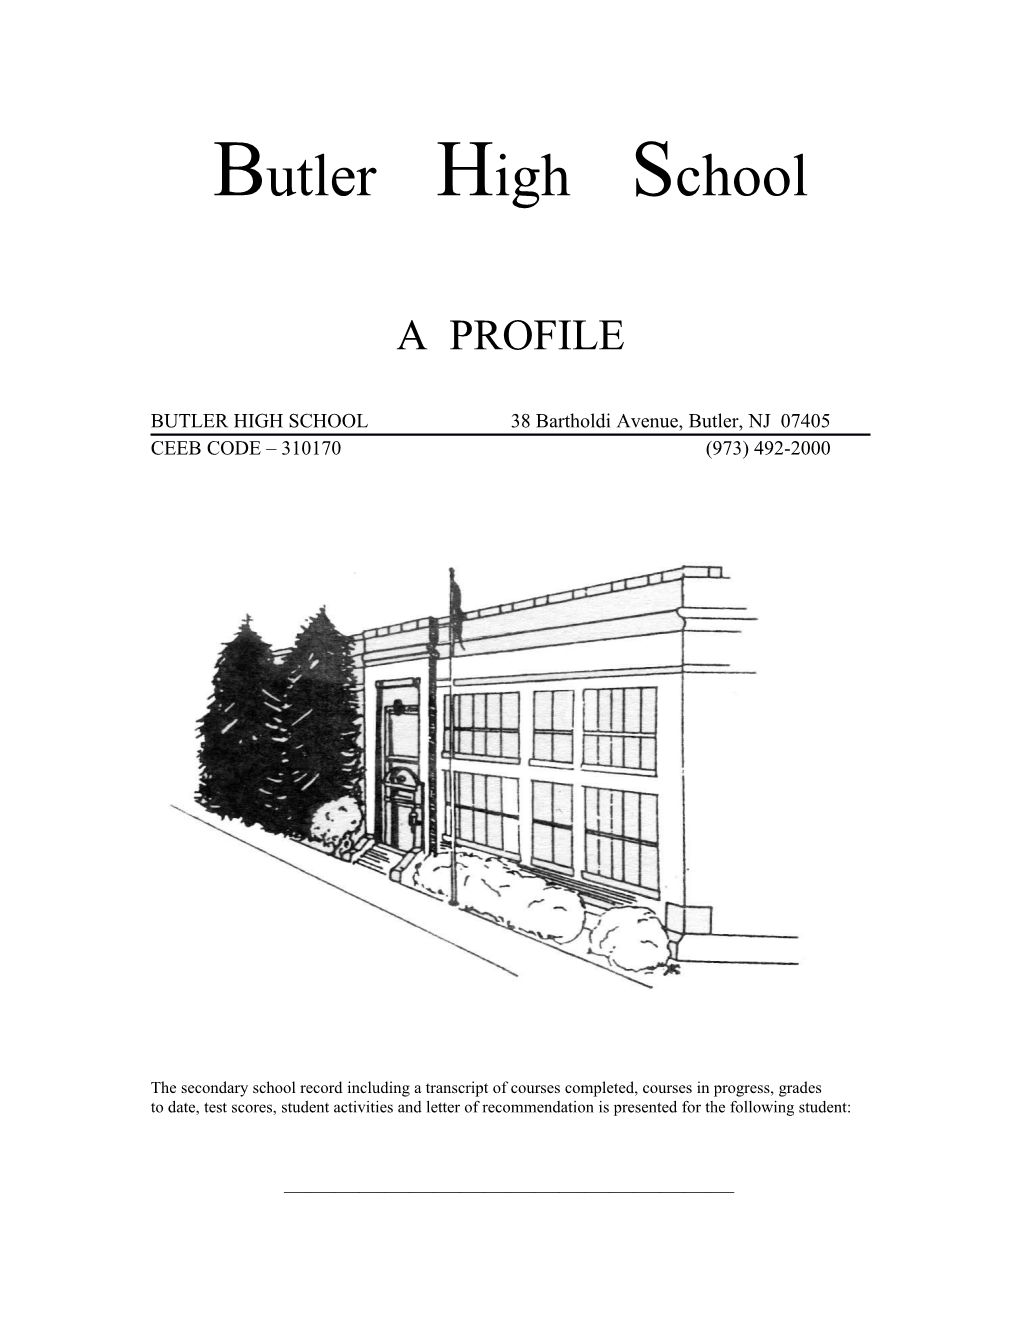 BUTLER HIGH SCHOOL 38 Bartholdi Avenue, Butler, NJ 07405